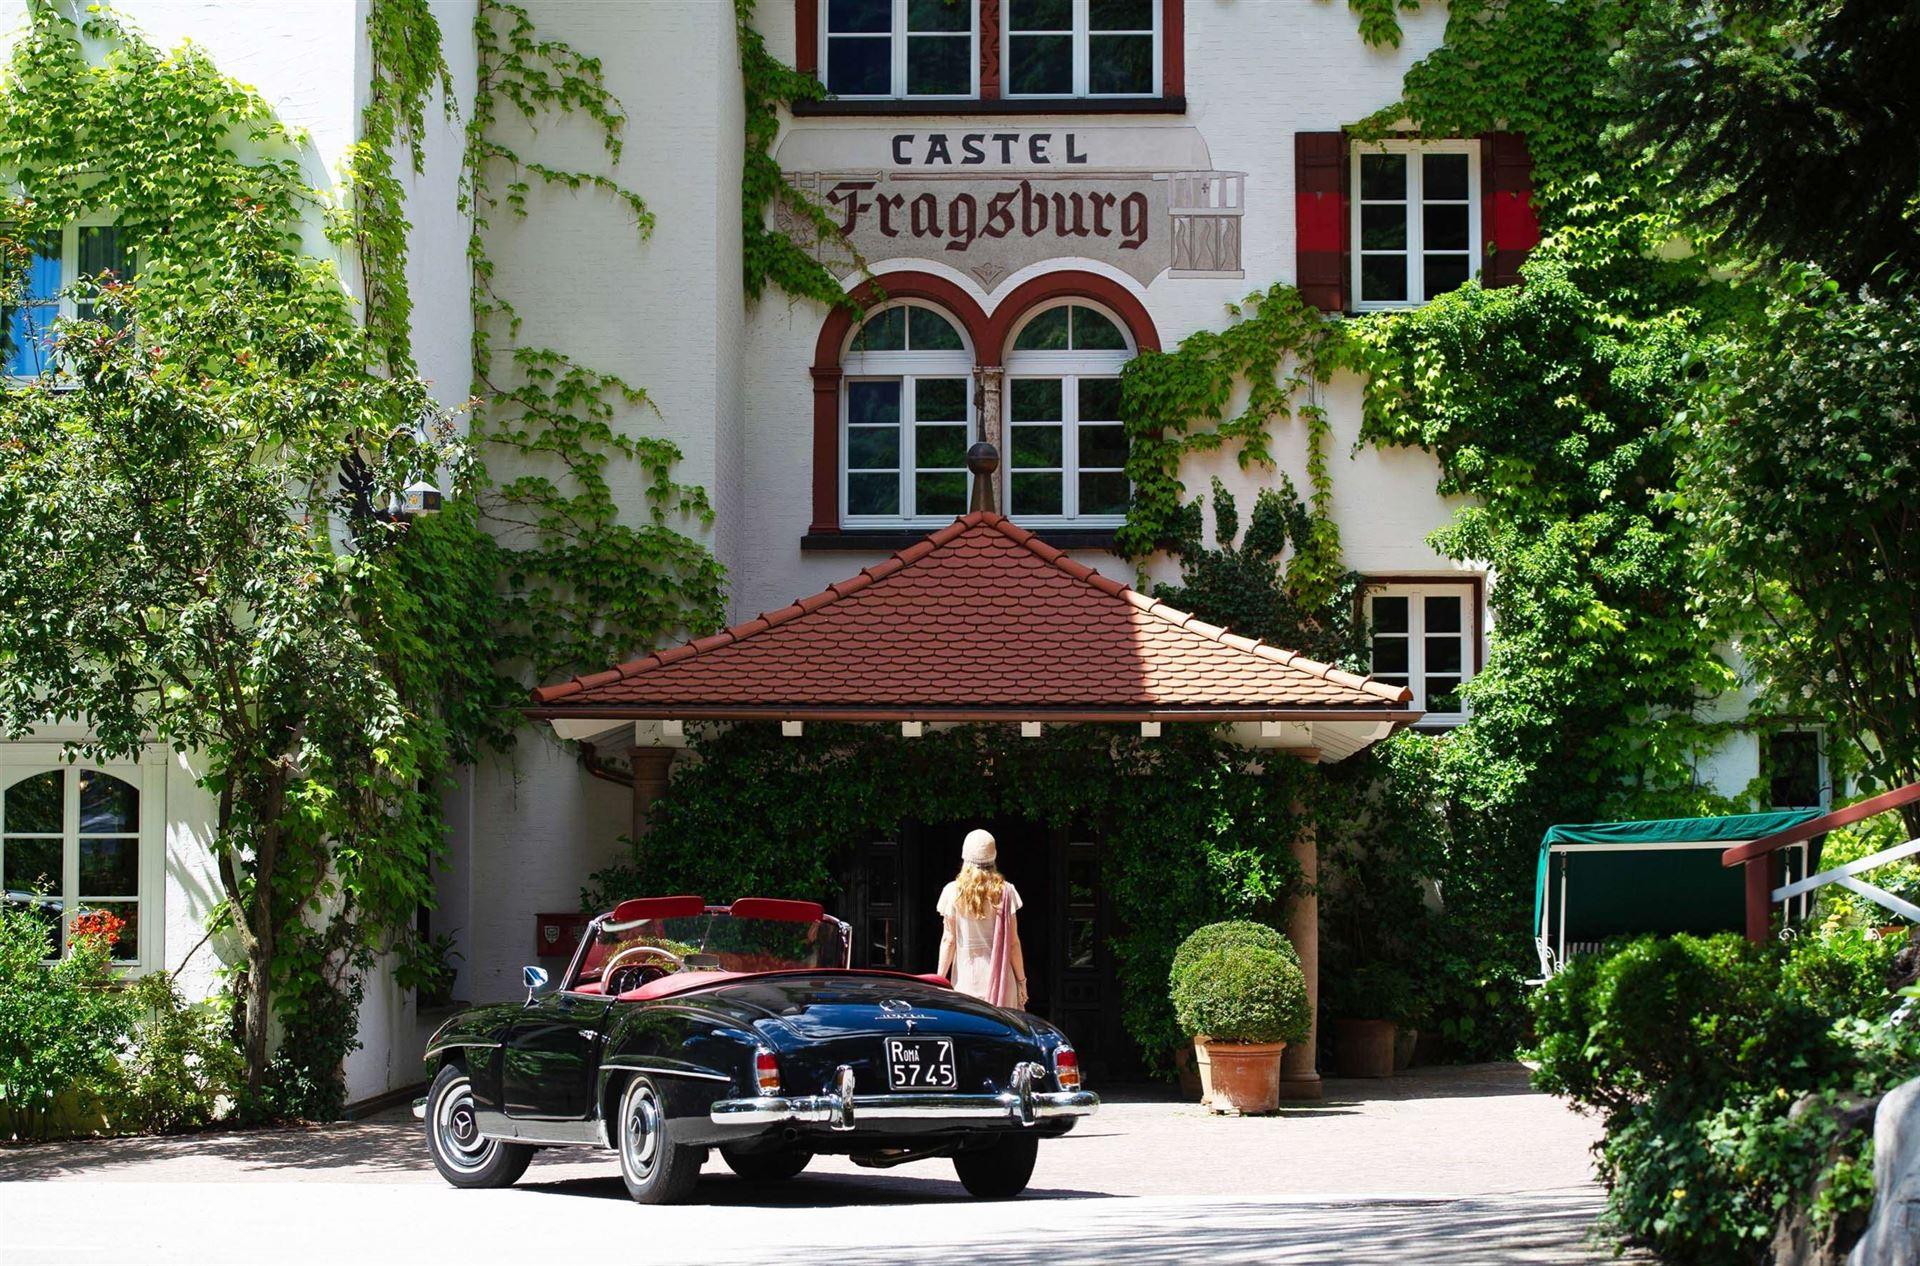 Castel Fragsburg luxe hotel deals